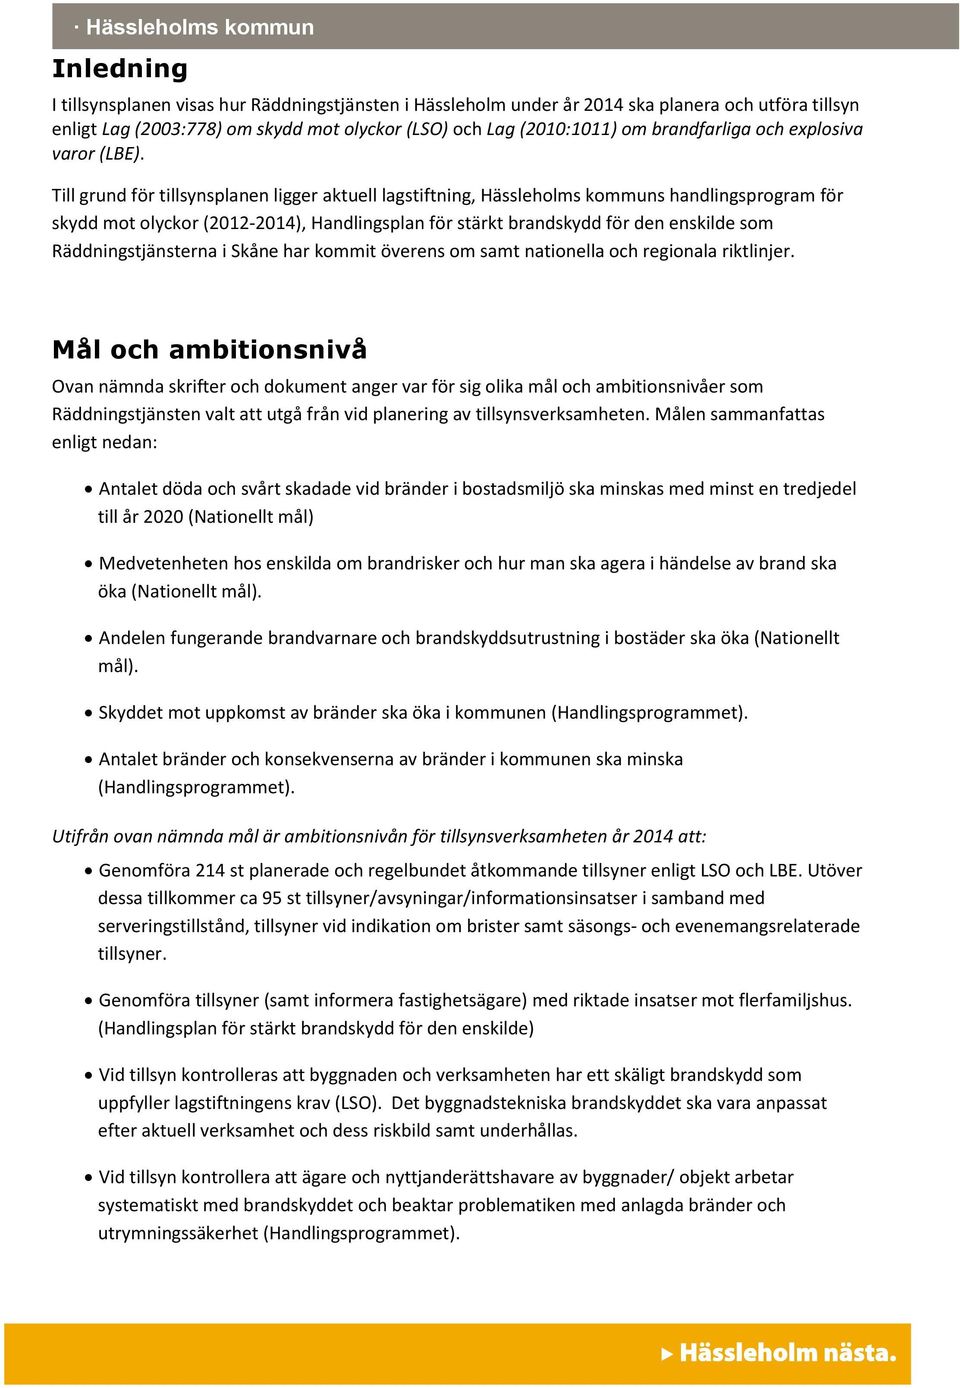 Till grund för tillsynsplanen ligger aktuell lagstiftning, Hässleholms kommuns handlingsprogram för skydd mot olyckor (2012-2014), Handlingsplan för stärkt brandskydd för den enskilde som